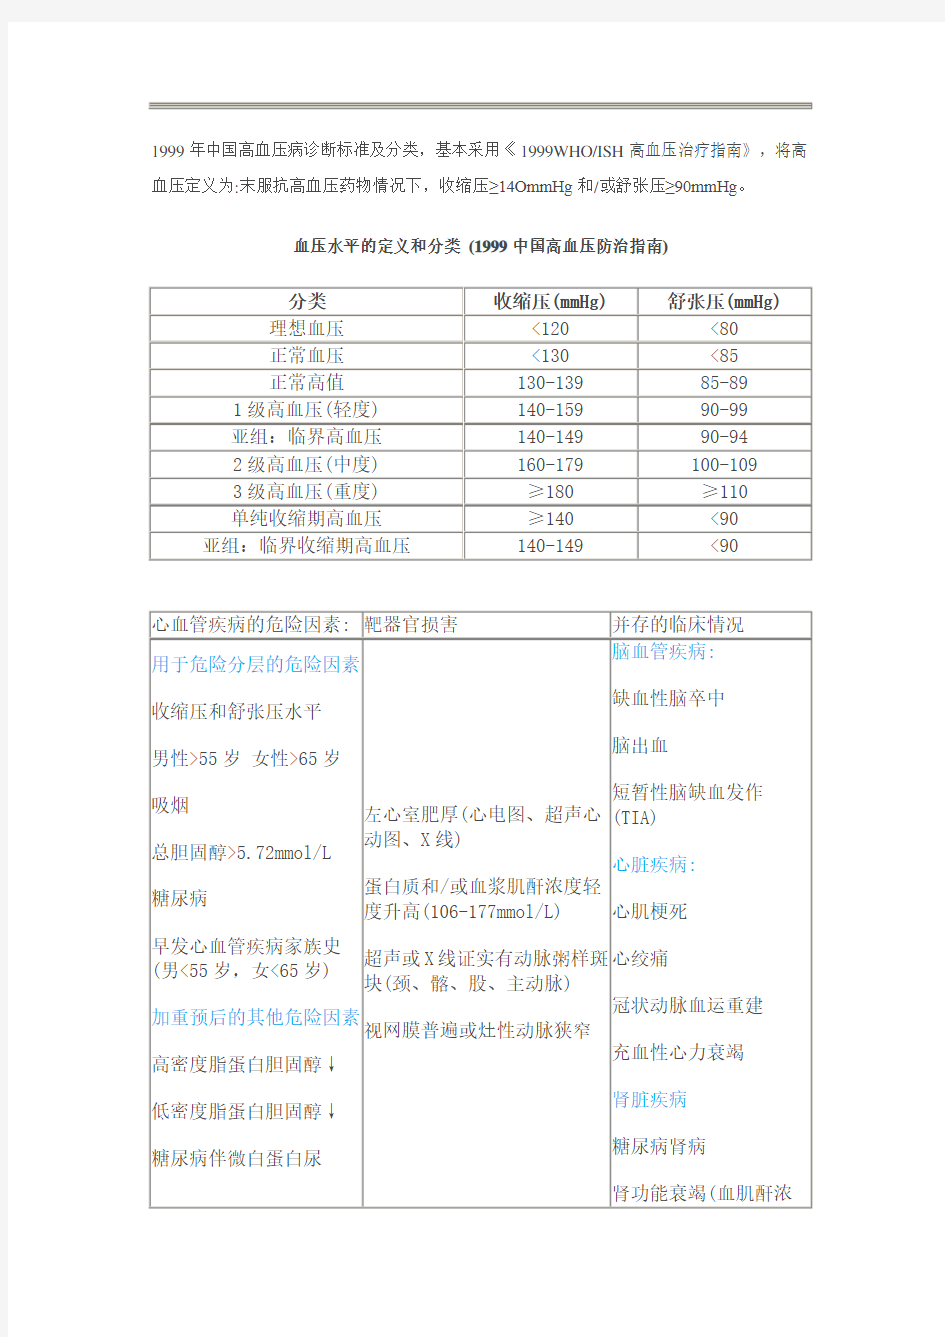 1999年中国高血压病诊断标准及分类